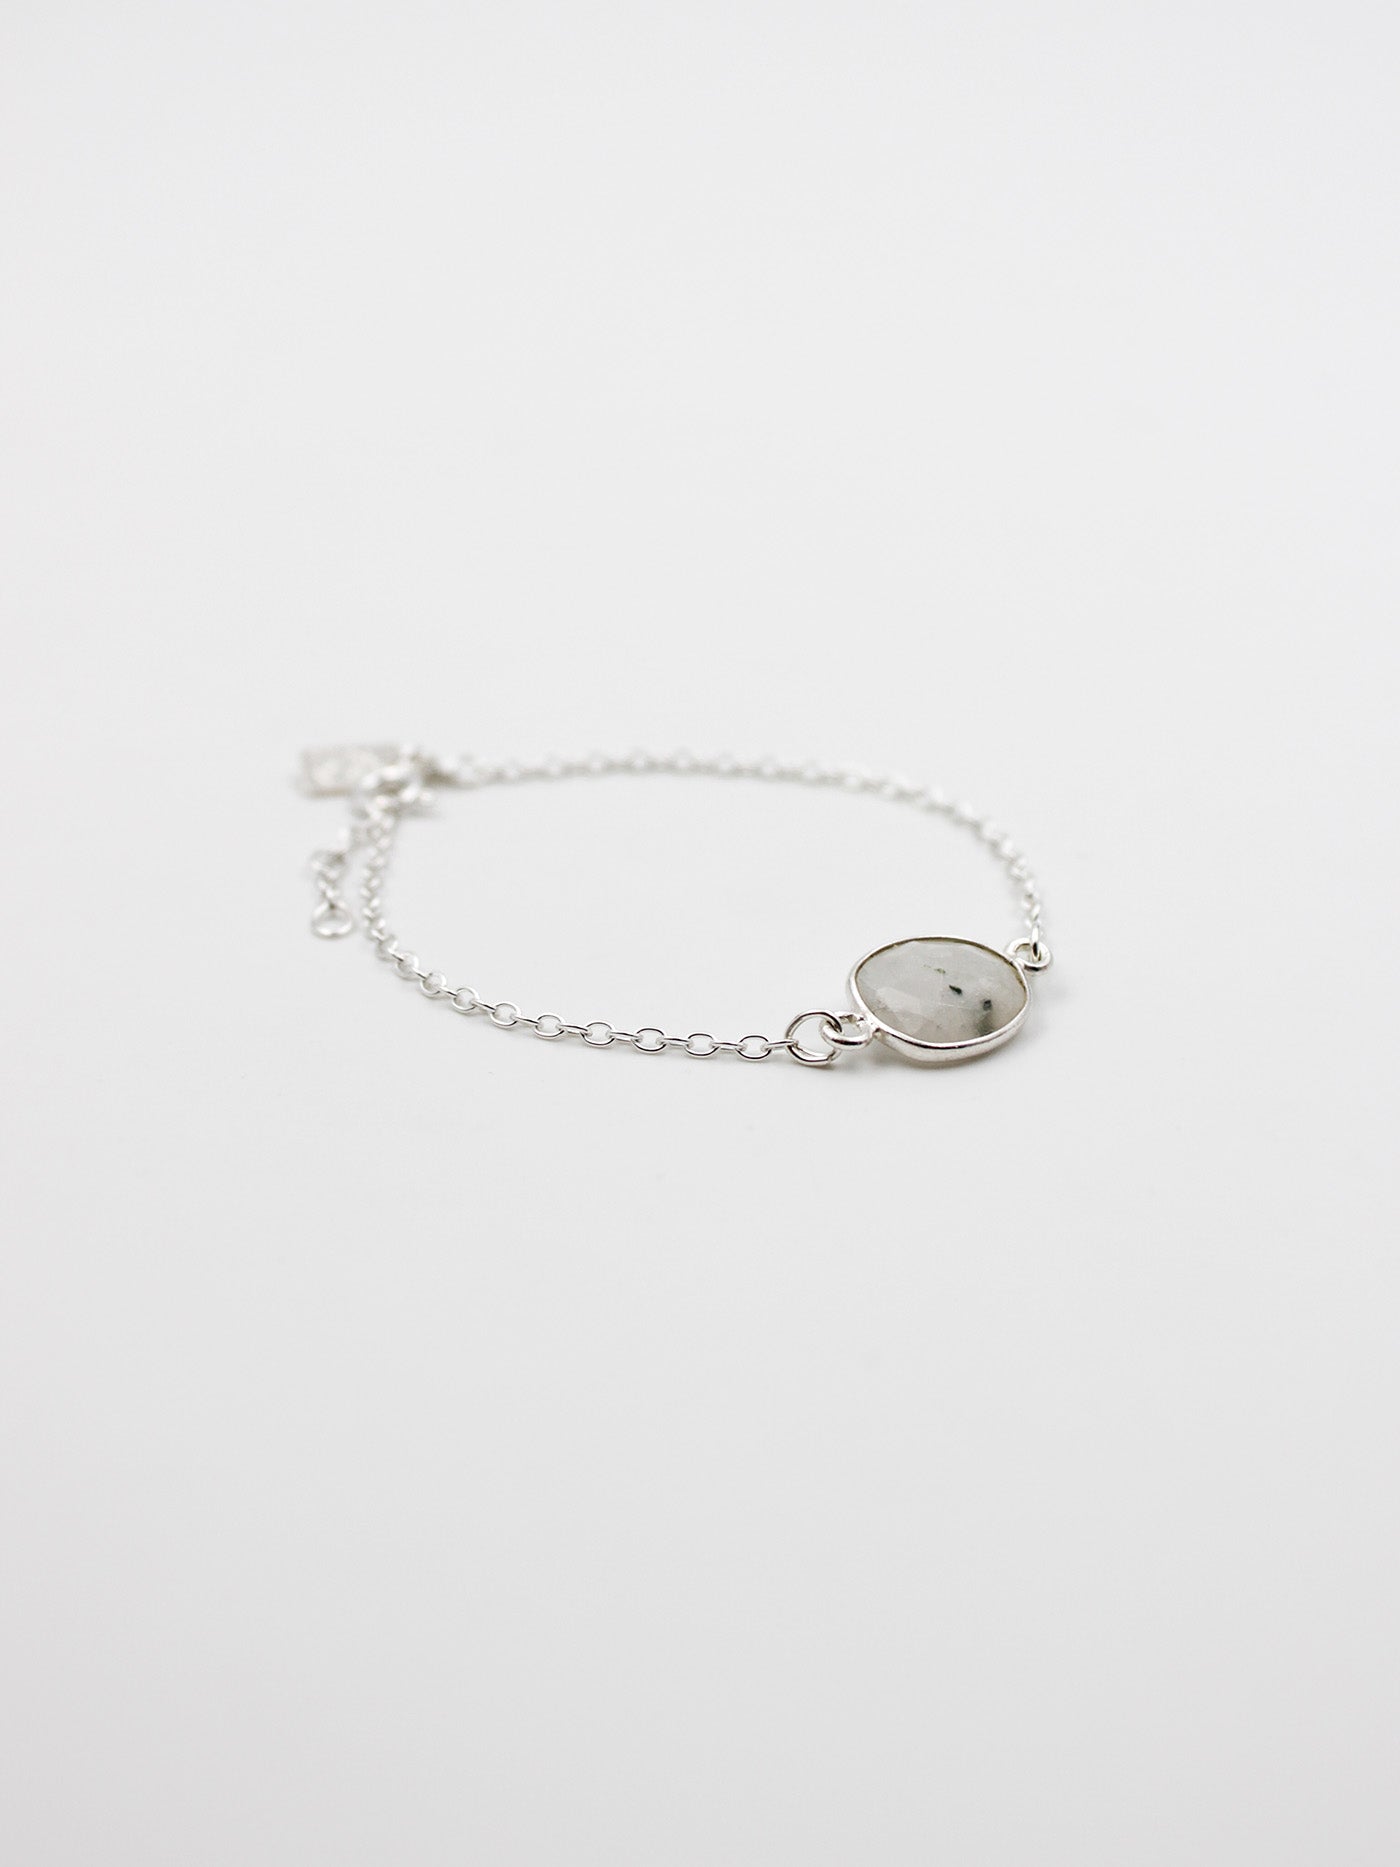 Bracelet pierre - gamme LOUISE - argent 925 - pierre naturelle : pierre de lune - nouvelle collection 23FW - l’Atelier des Dames